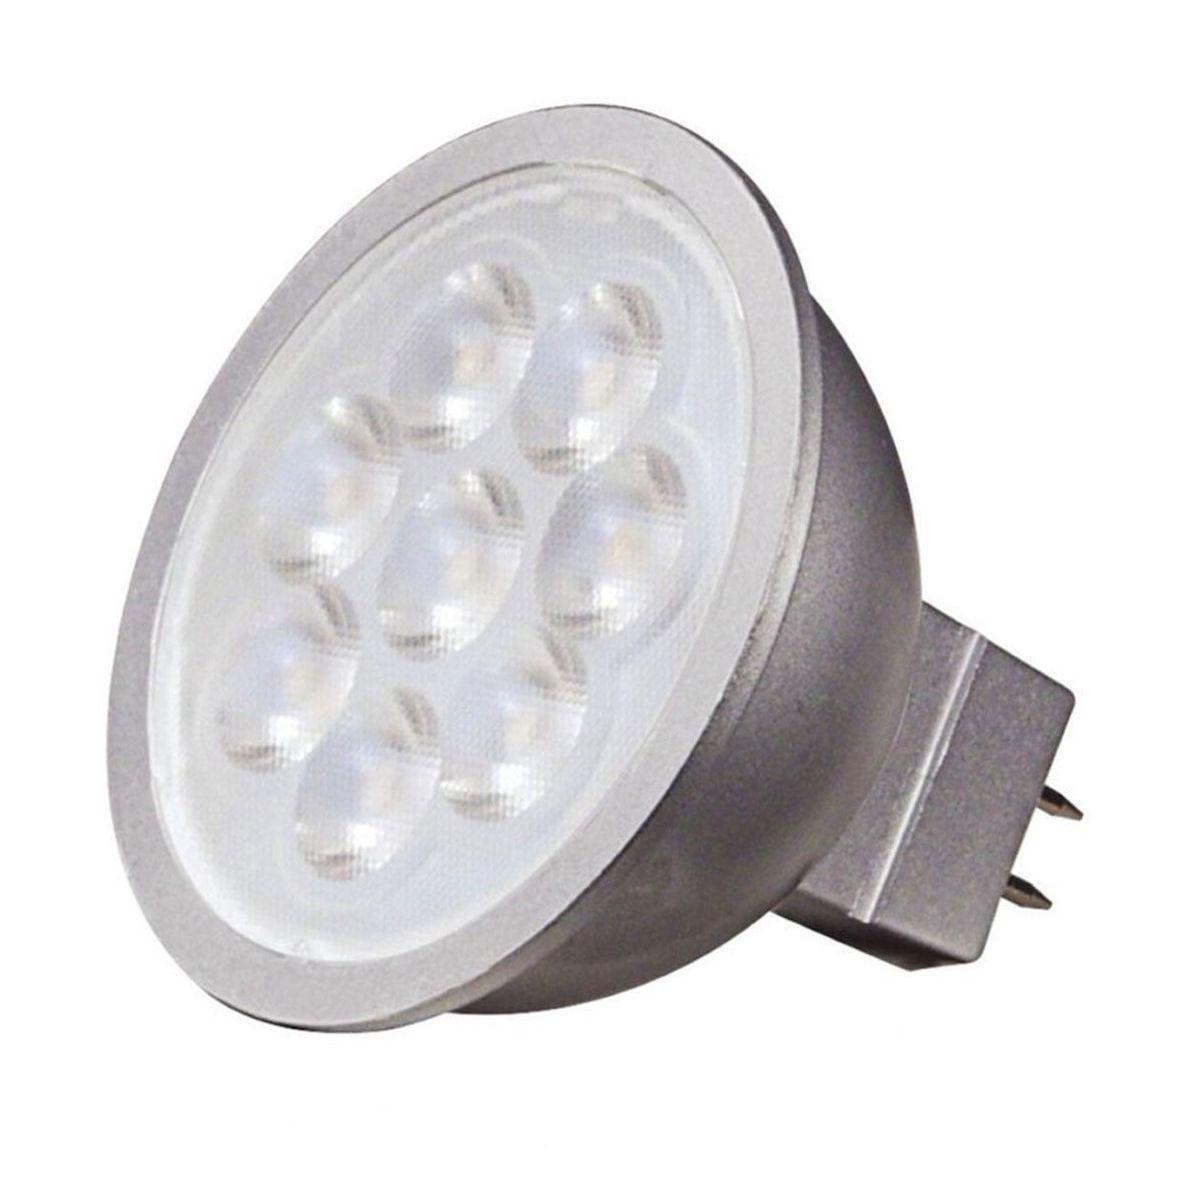 MR16 Reflector LED bulb, 6 watt, 450 Lumens, 3000K, GU5.3 Base, 40 Deg. Flood - Bees Lighting